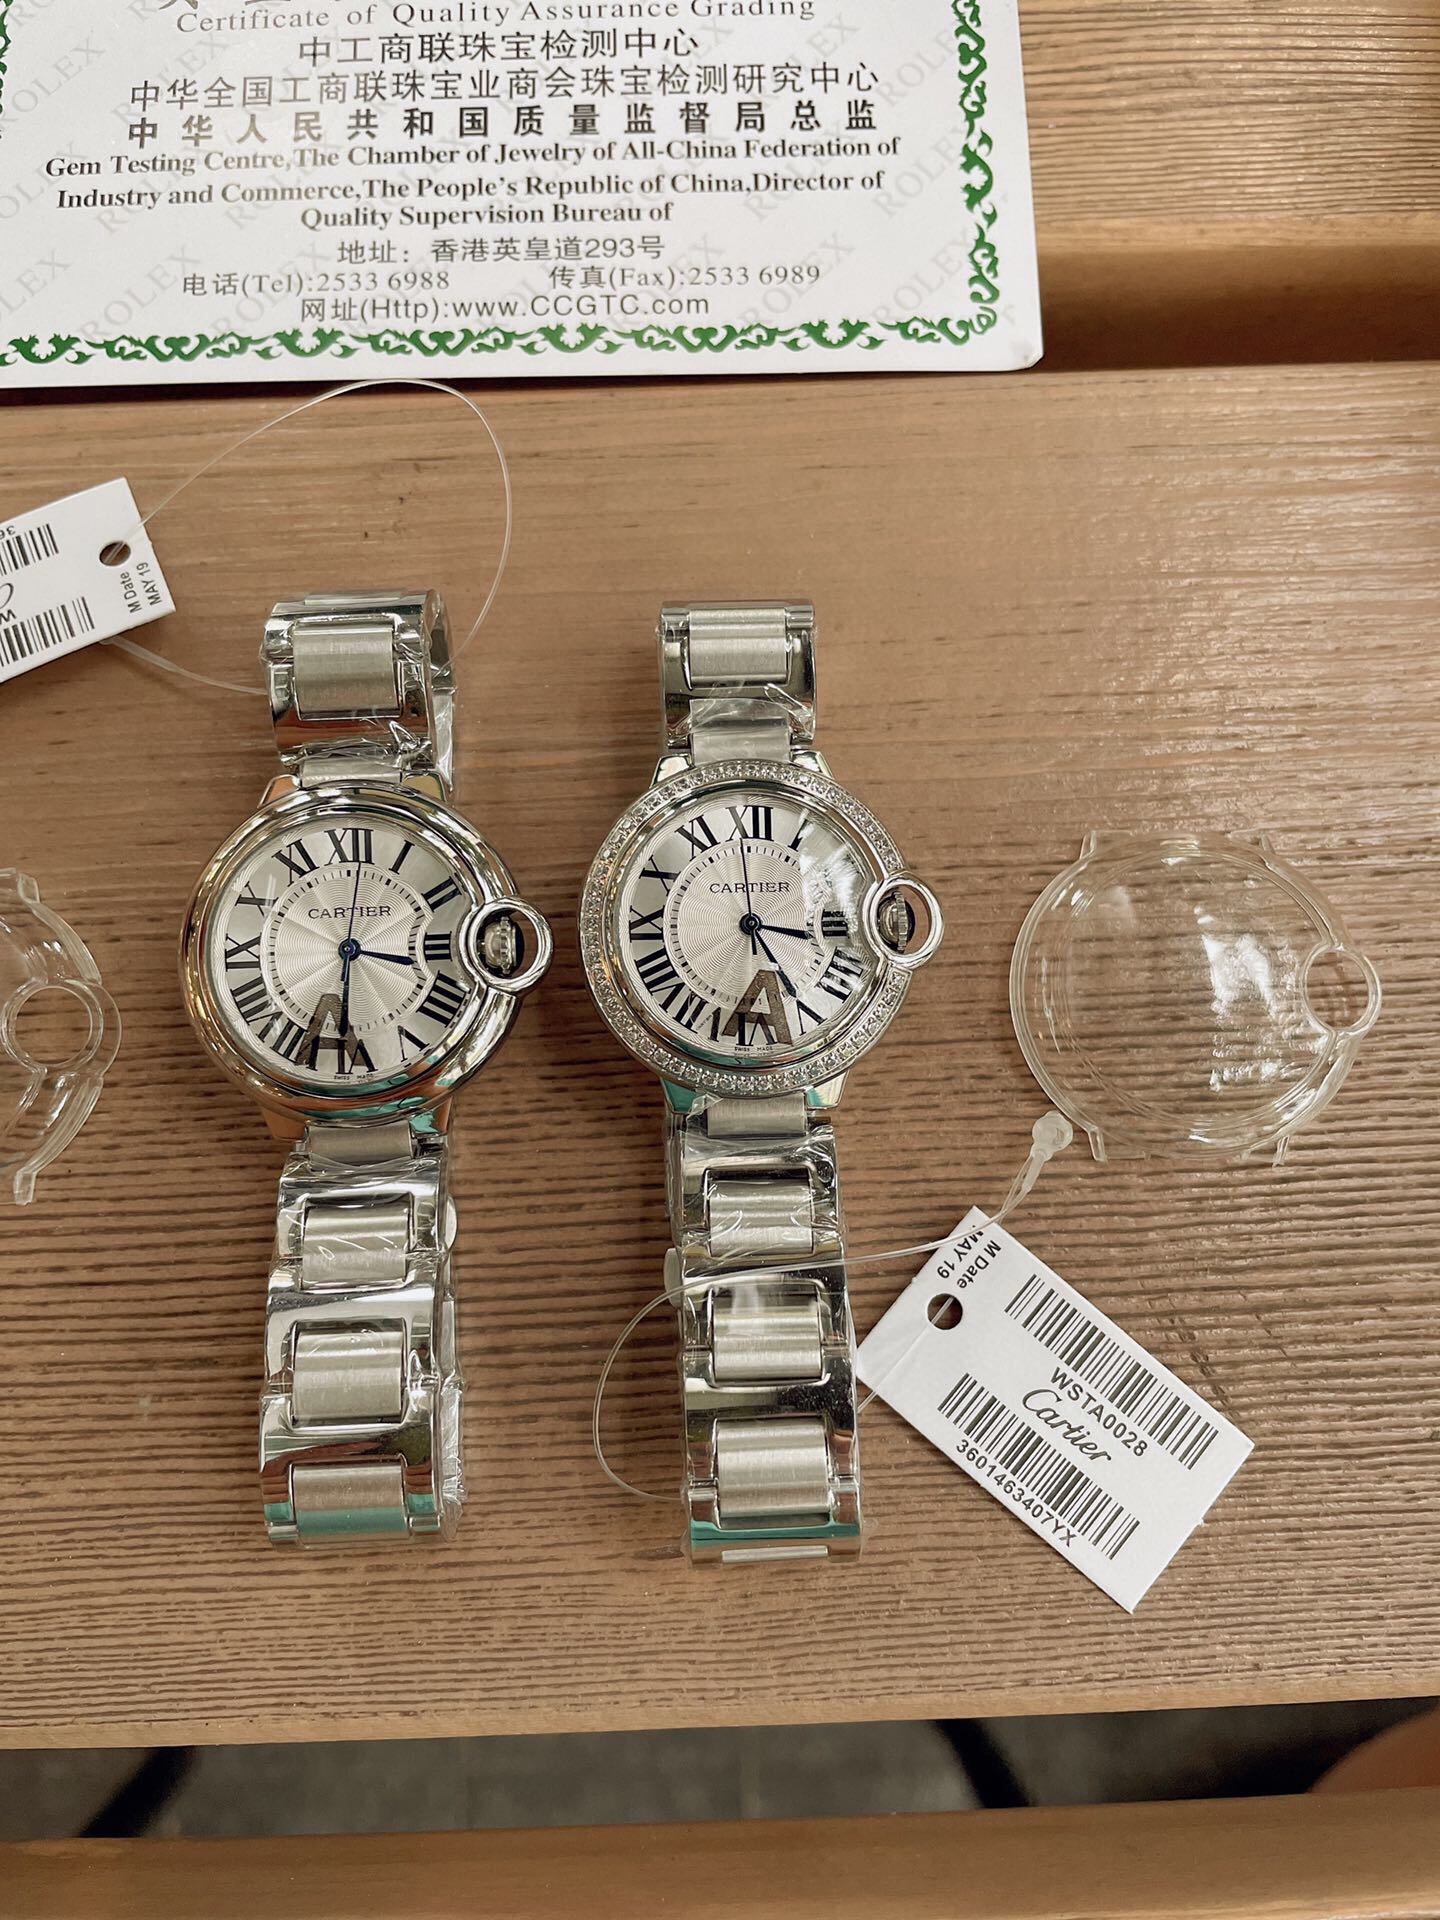 「ダイヤモンドなし」CARTIERカルティエ 時計 中身コピー フランス 薄い腕時計 軽量 レディース 最新商品 _1